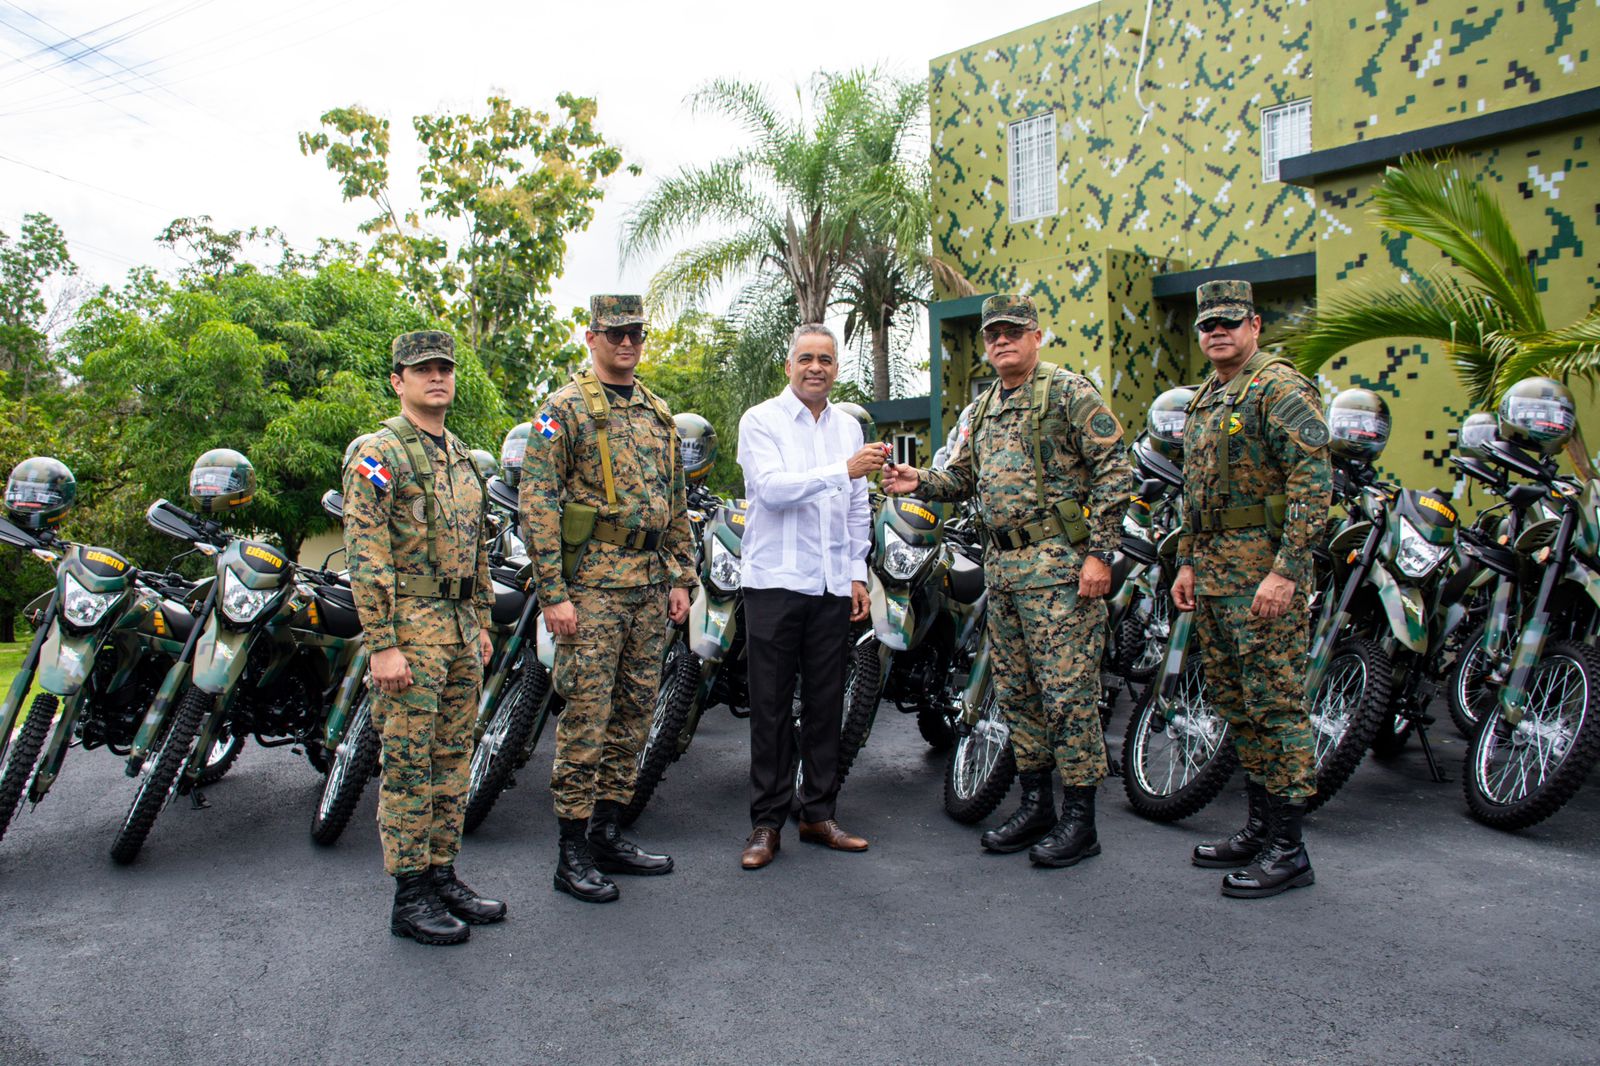 9-1-1 entrega 50 nuevas motocicletas y 200 terminales de radio al Ejército de la República